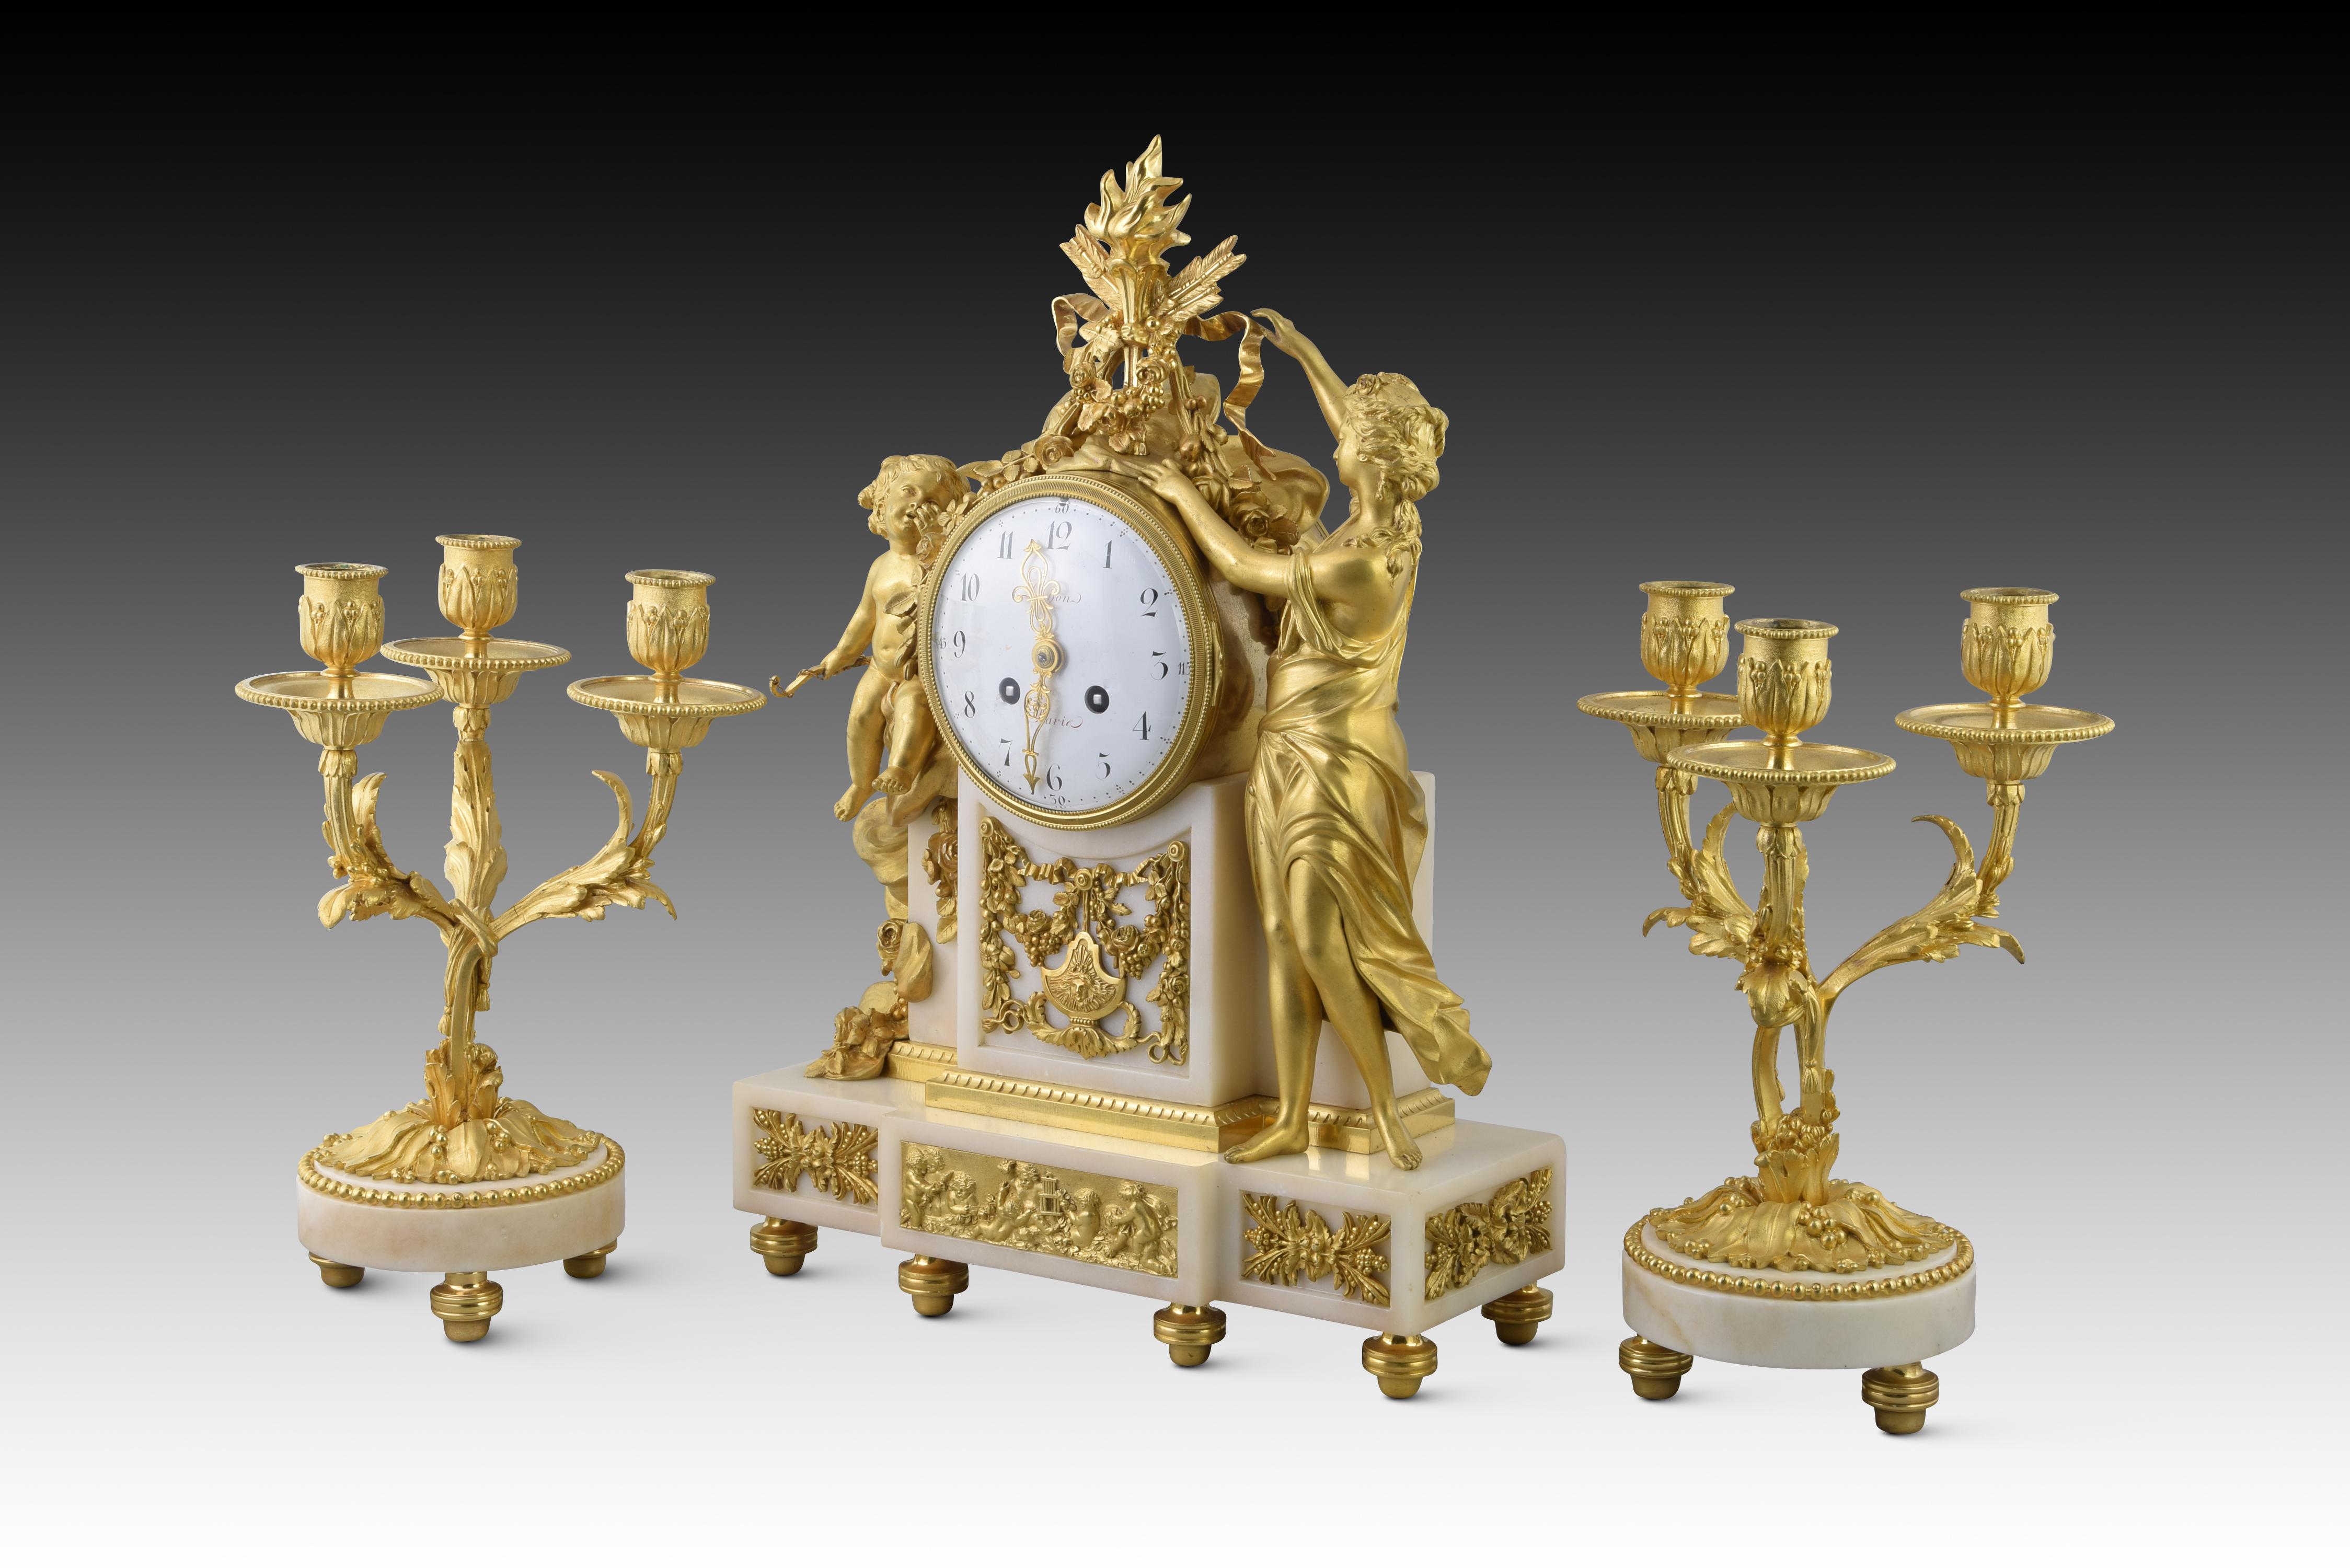 Louis XVI-Uhren und Kronleuchter. Vergoldete Bronze, Marmor. POCHON, Jean-Charles (act. letztes Drittel des 18. Jahrhunderts). Paris, Frankreich, um 1780 oder 1790 und später.
Bibliographie: (Uhr) NIEHÜSER, Elke. 